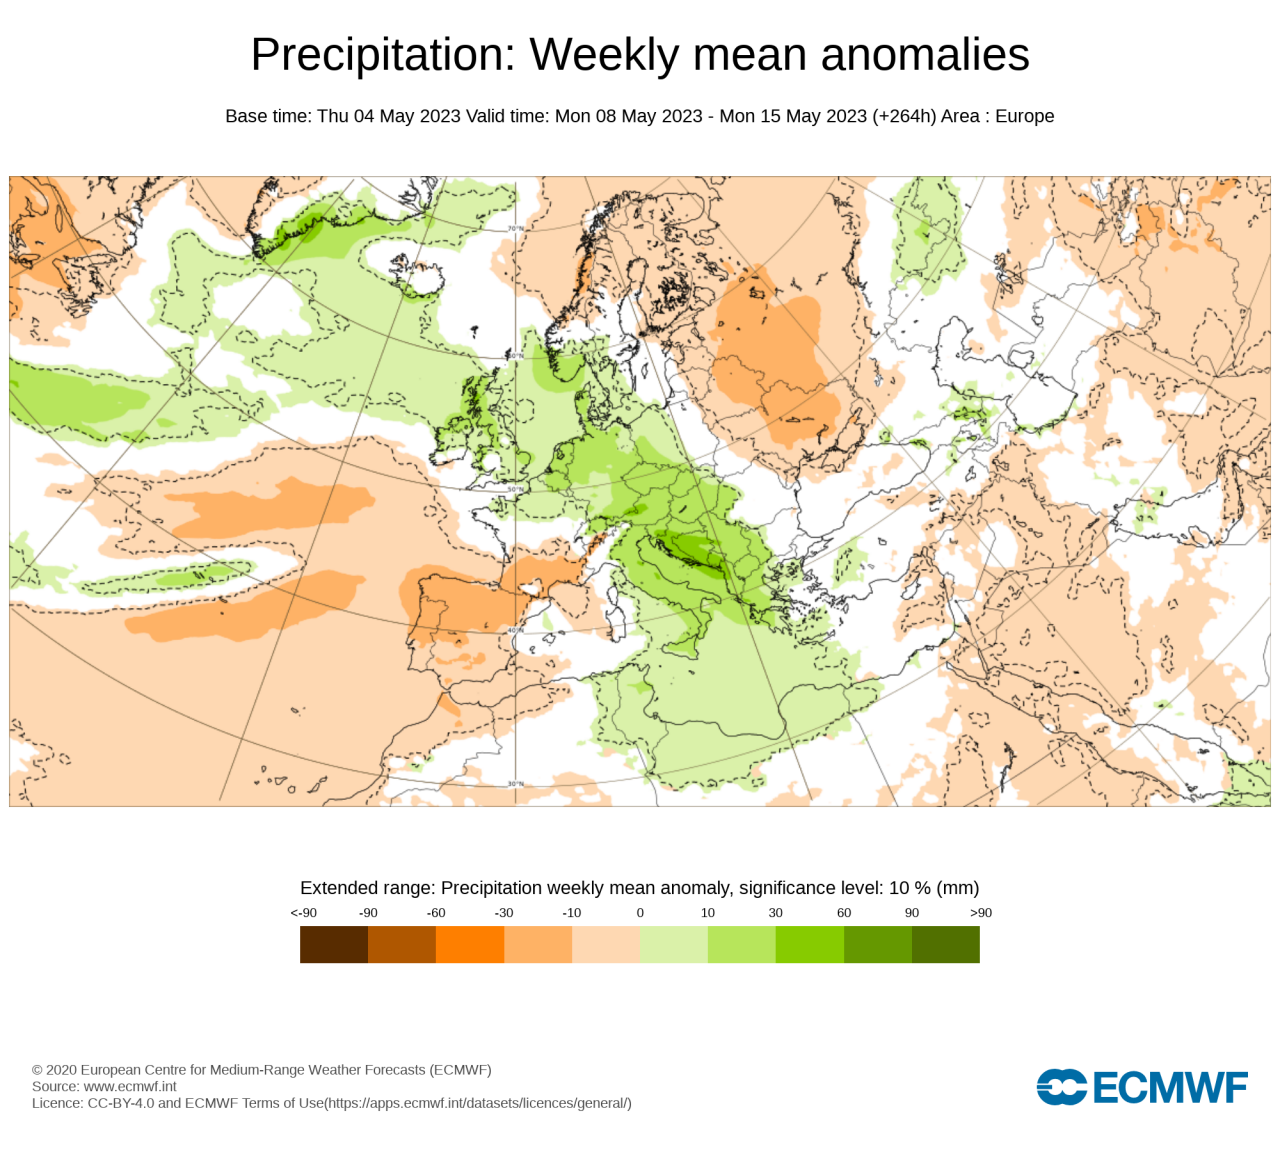 precipitazioni sopra media nella seconda decade di maggio, fonte Ecmwf